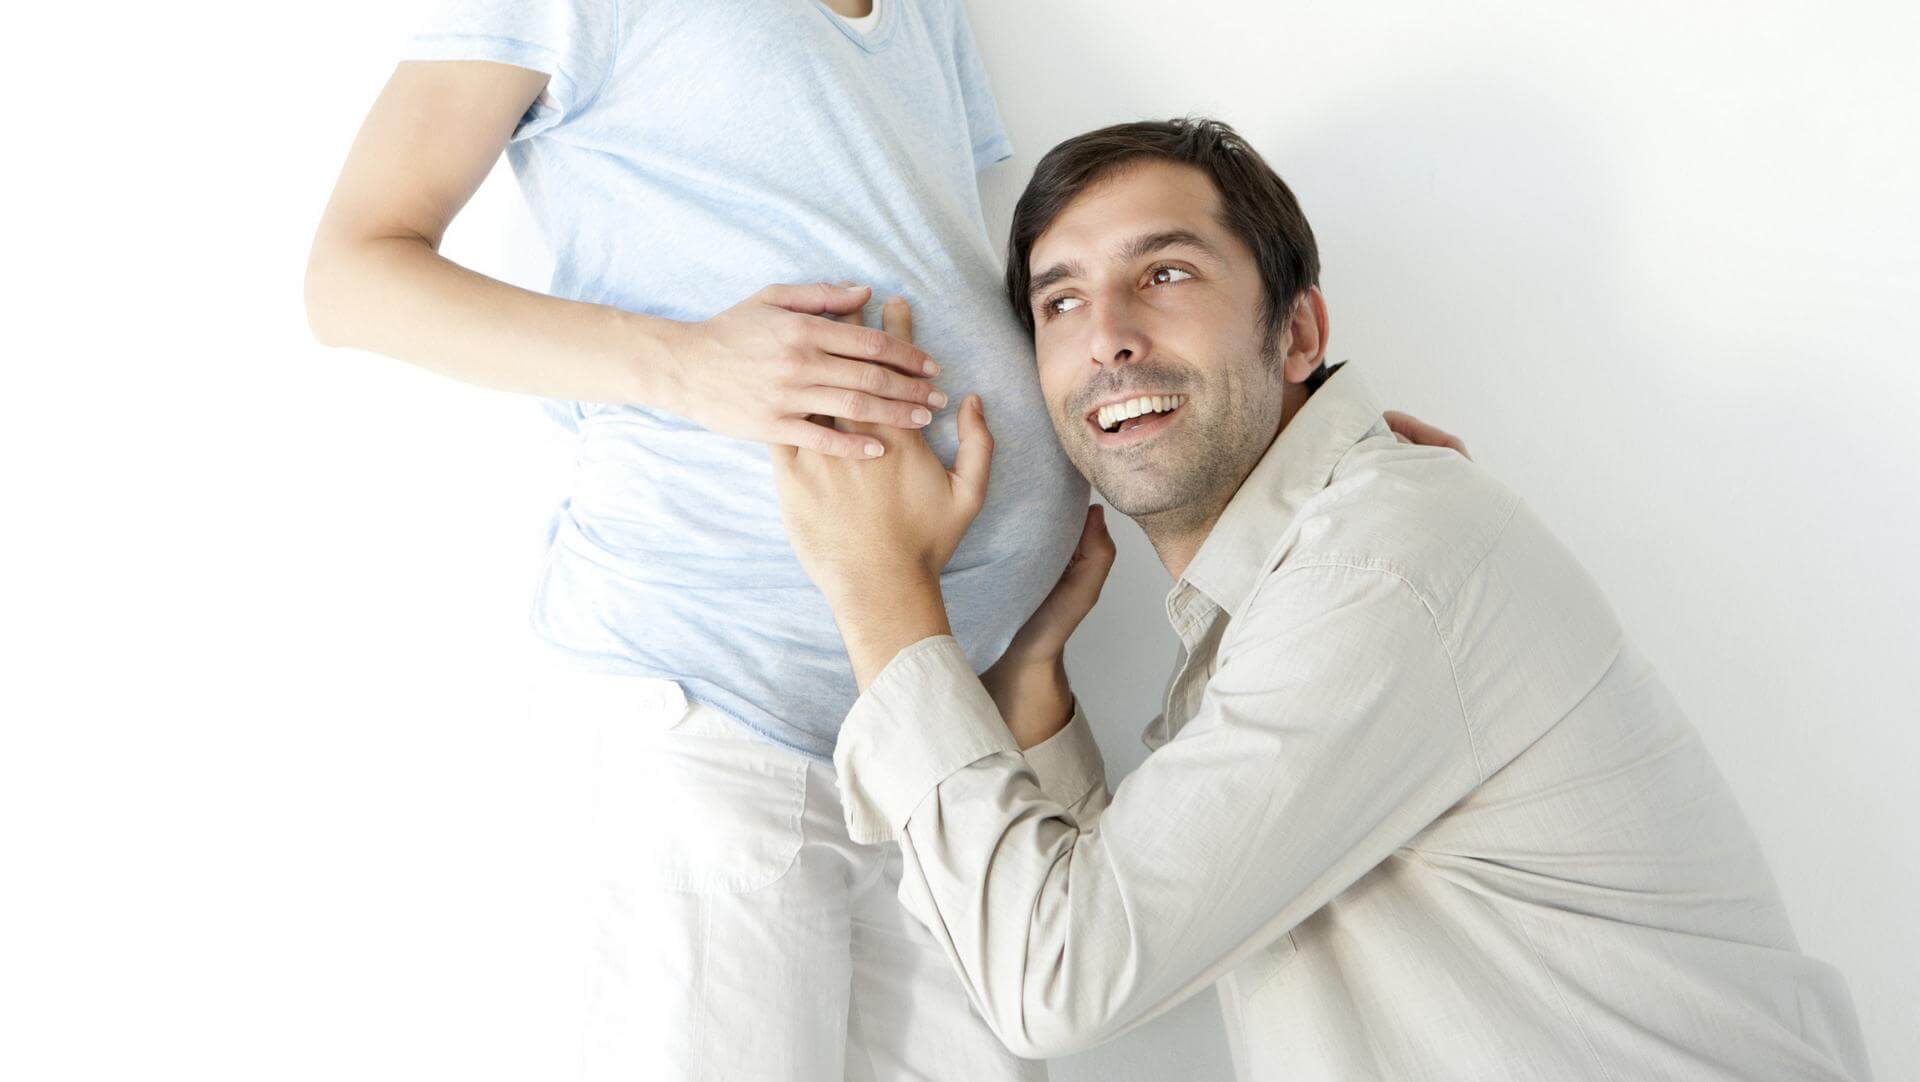 πρησμενο στηθοσ εγκυμοσυνη η περιοδοσ